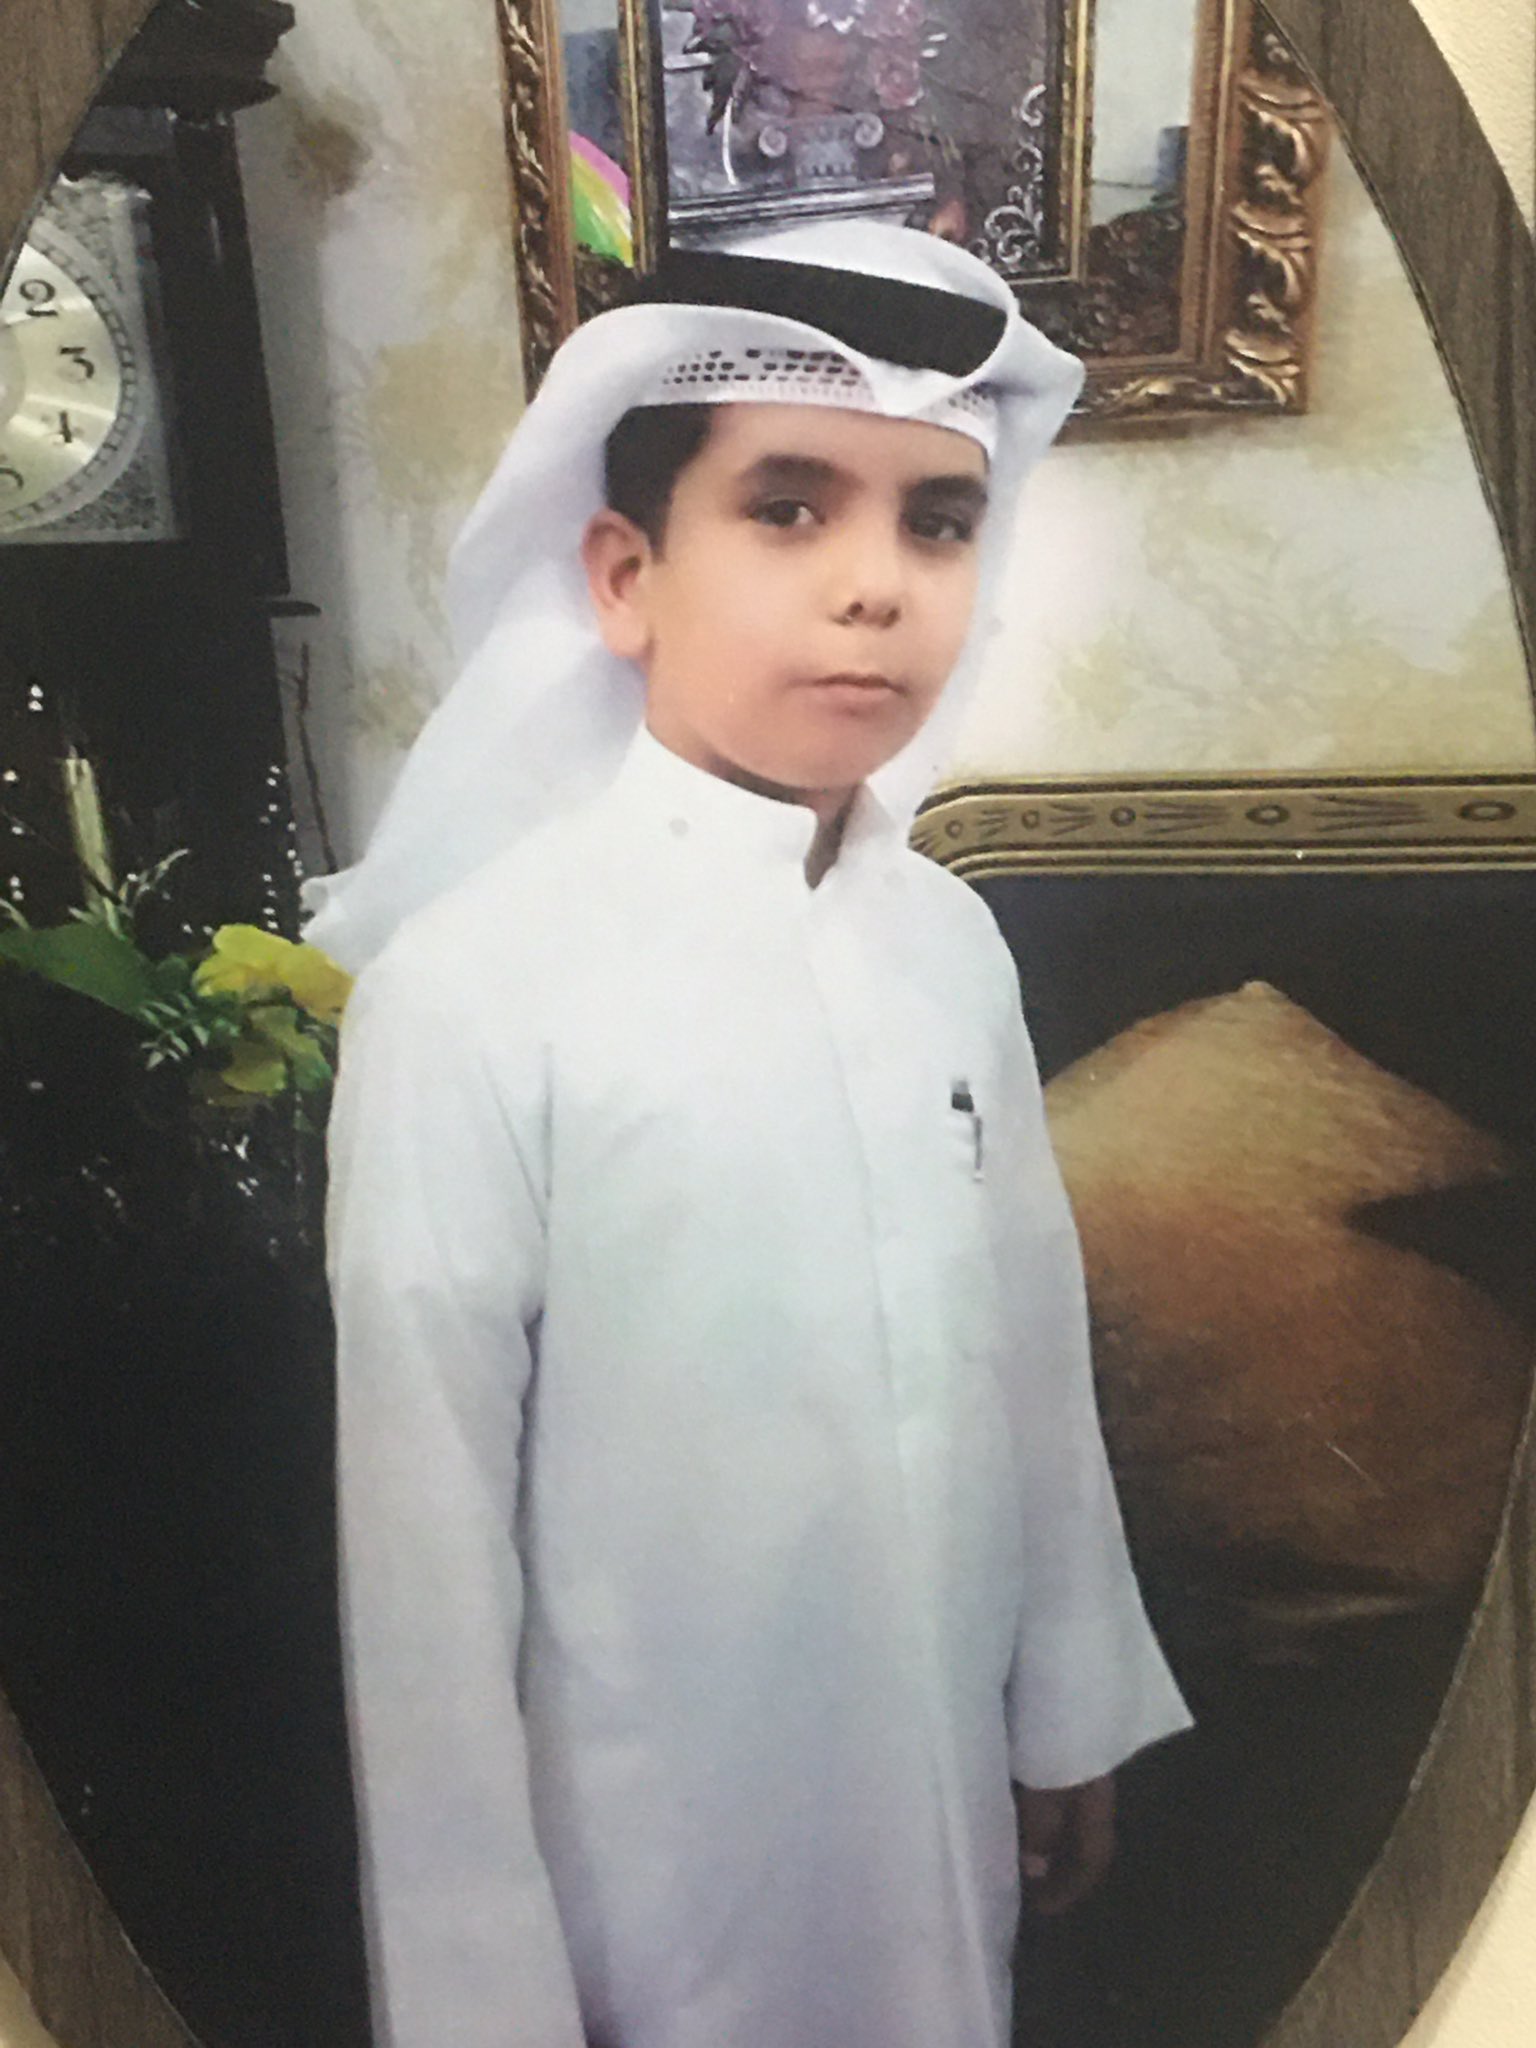 سبب انتحار الطفل علي خالد ياسر